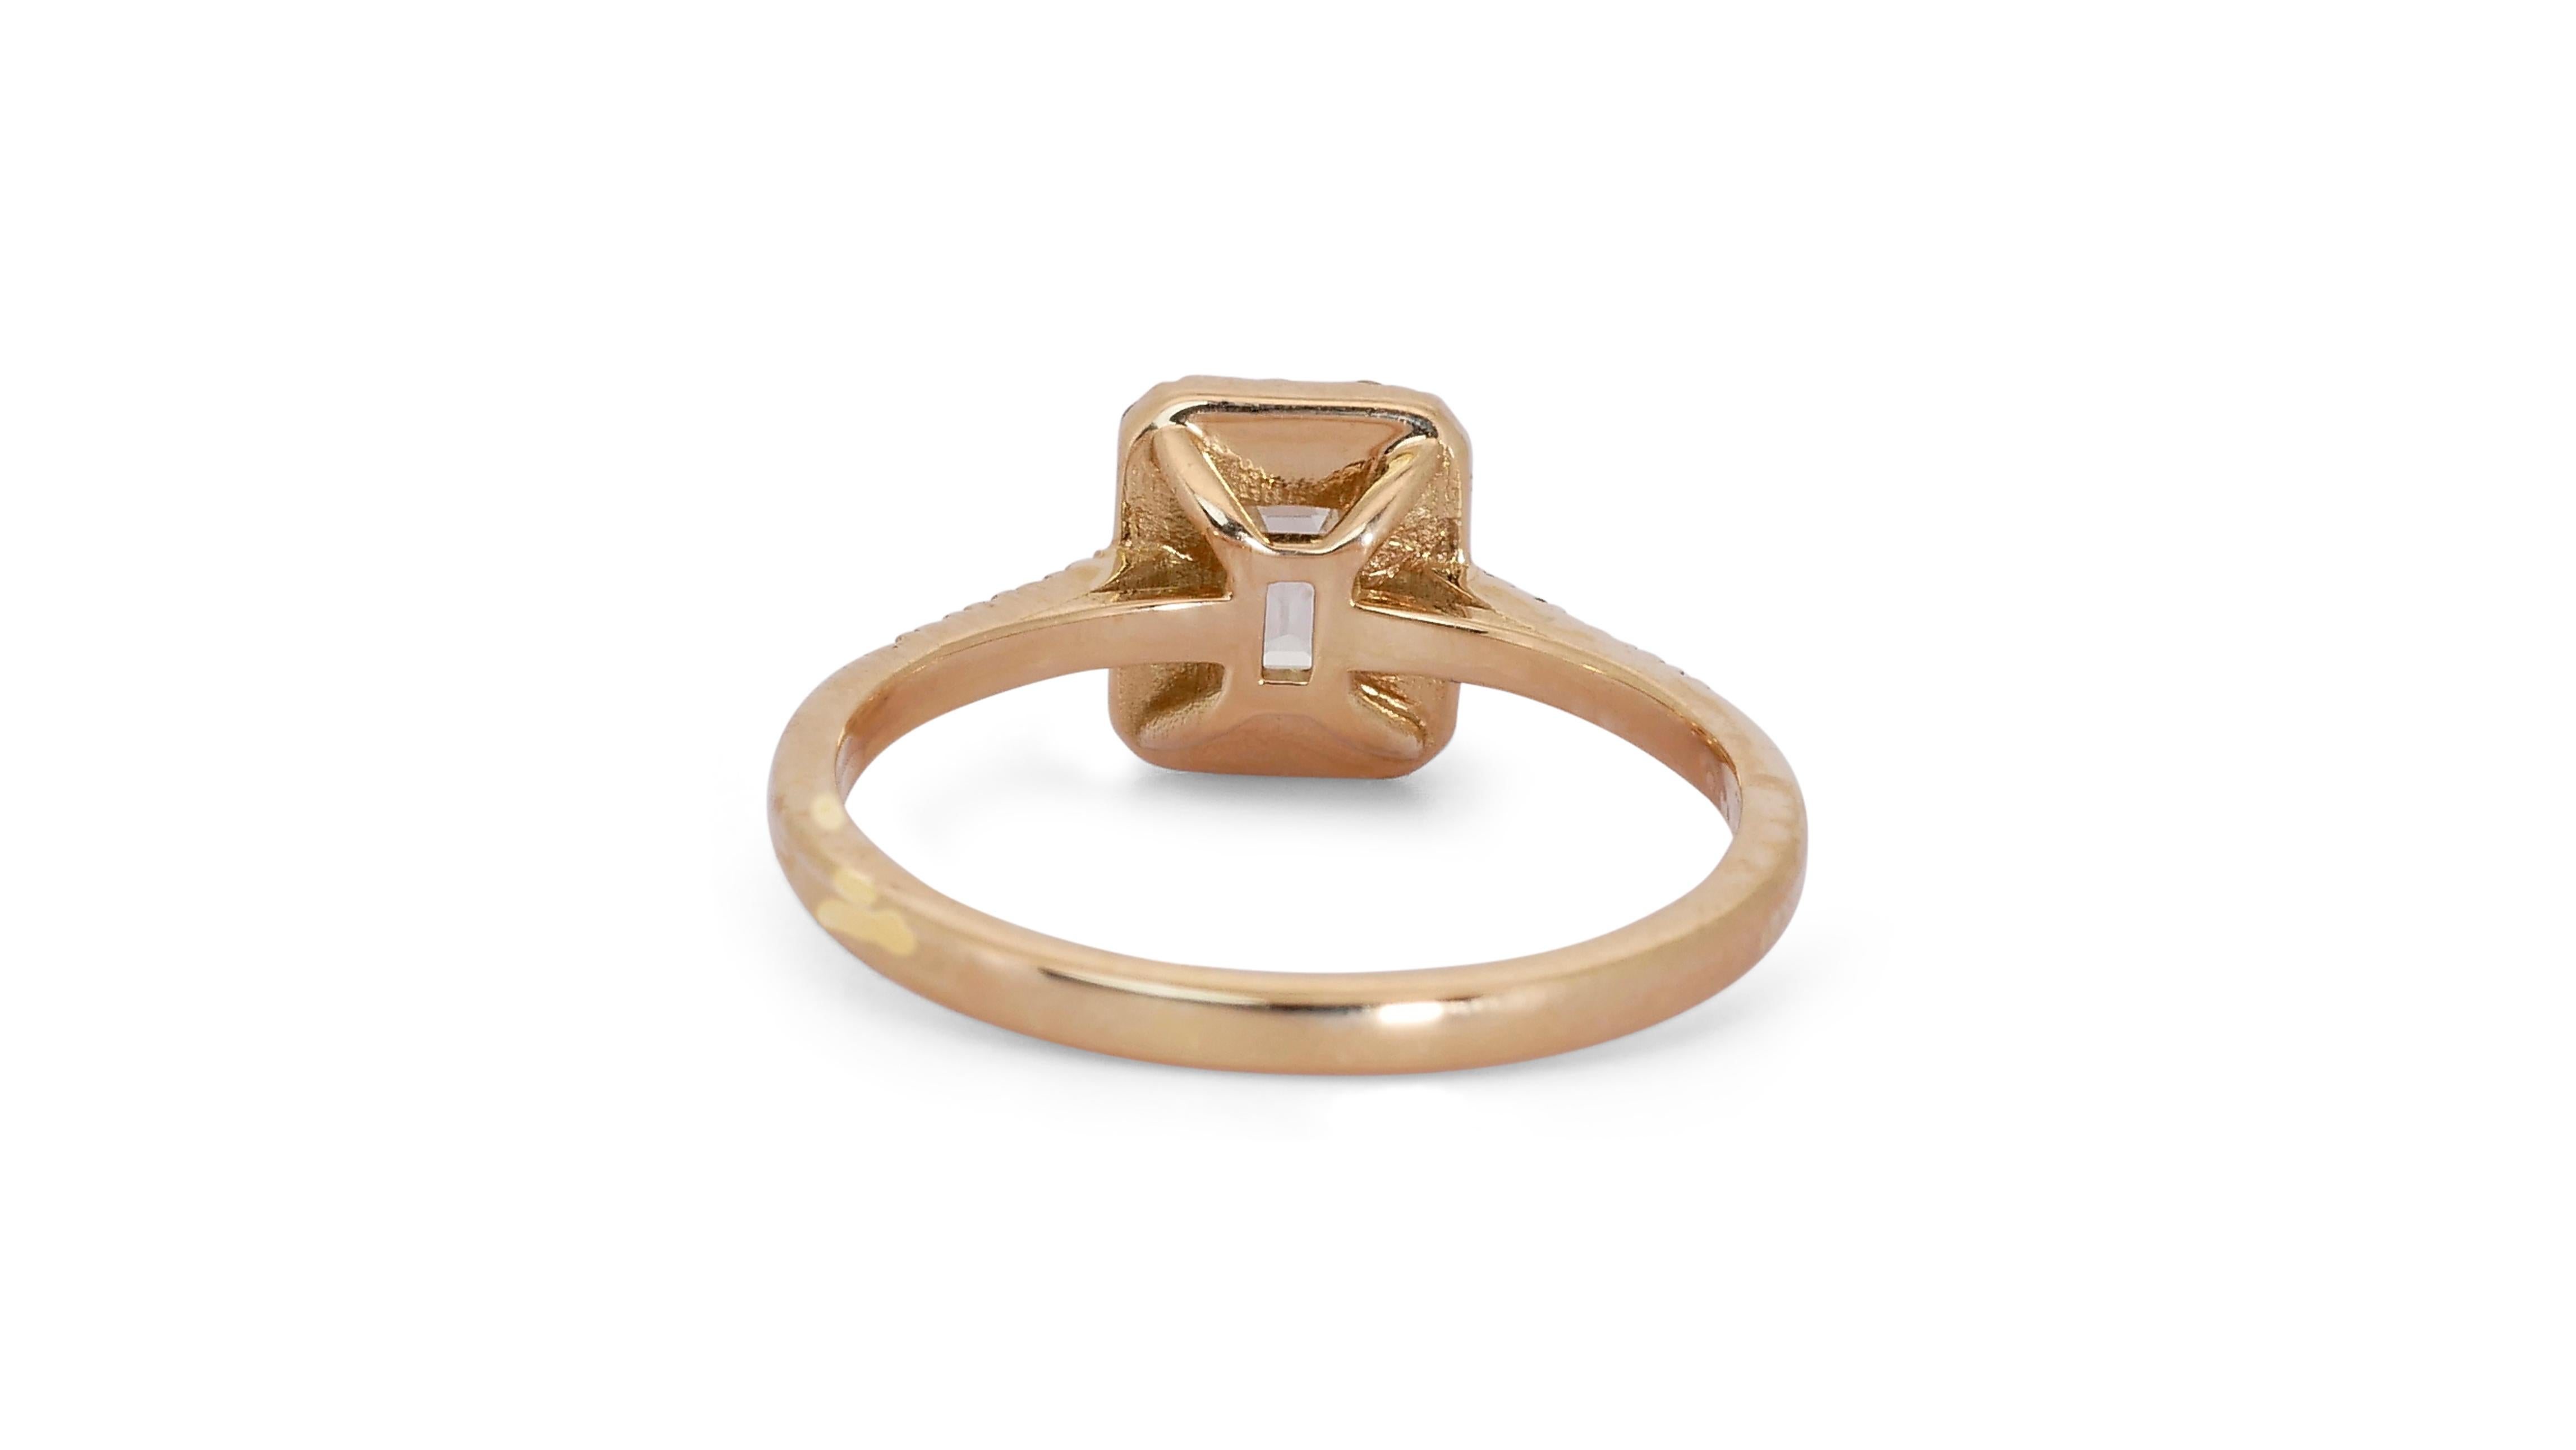 Ravishing 18k Rose Gold Halo Ring w/ 0.84 Carat Natural Diamonds IGI Cert For Sale 3